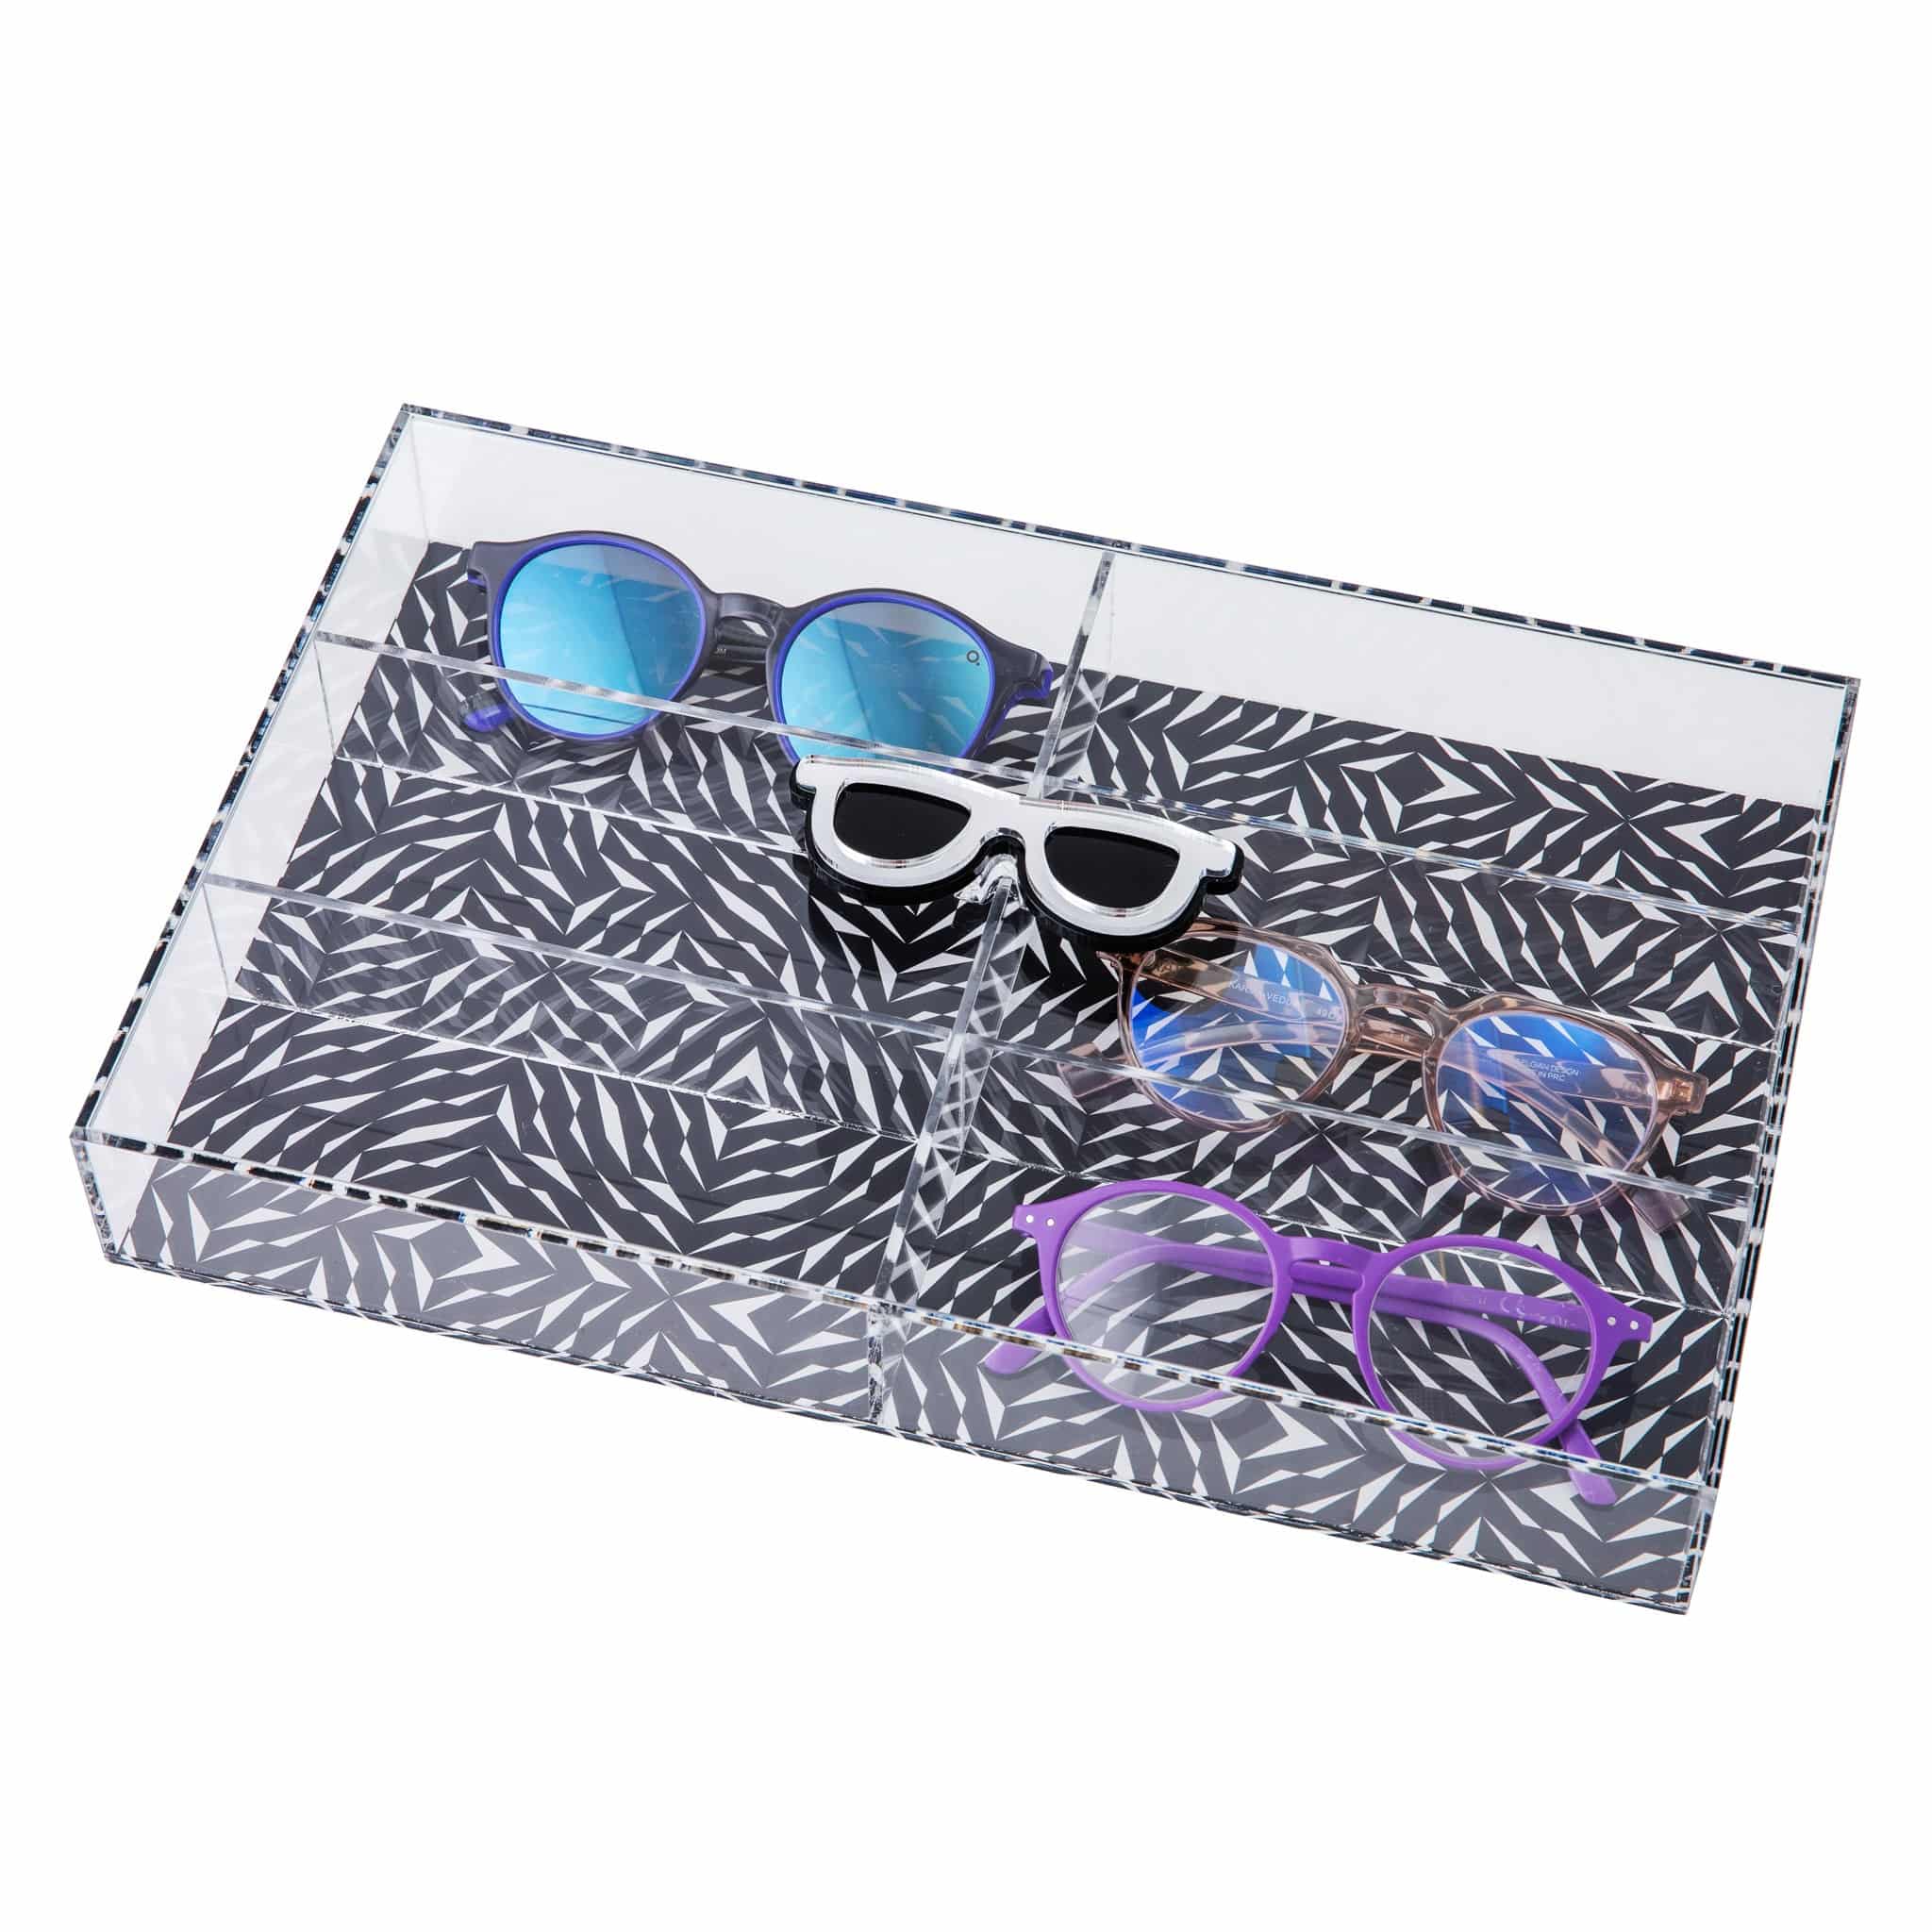 LASH Box | Black White Spikes Glasses